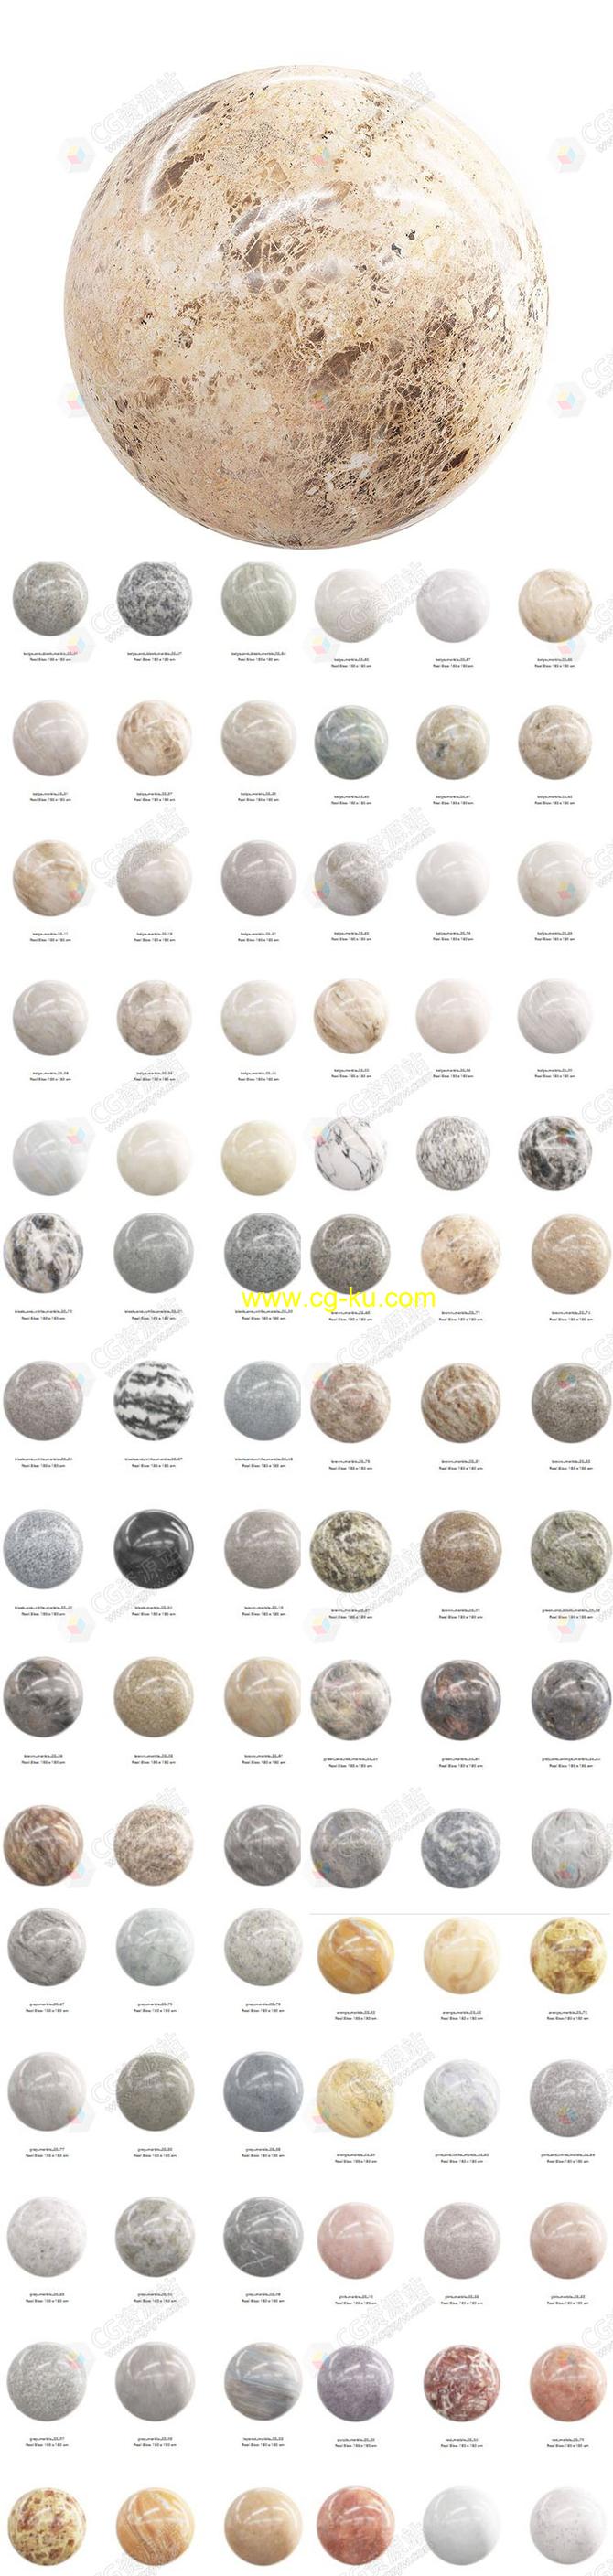 100组大理石PBR纹理贴图CGAxis第23卷的图片1